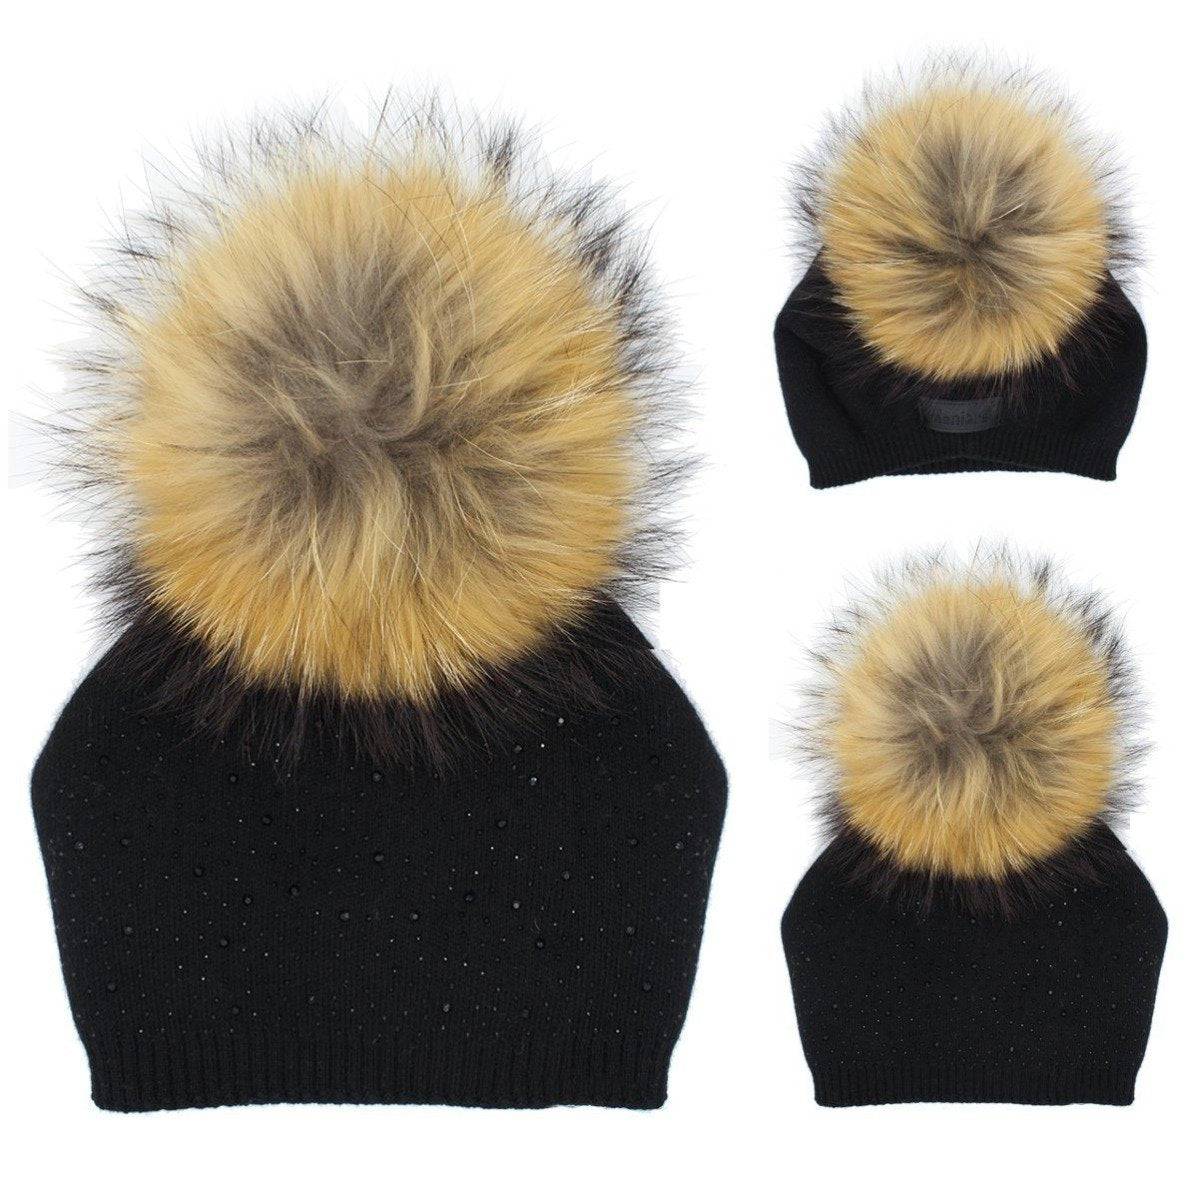 Sewn Knit Jumbo Fur Hat - Twinkle Twinkle Little One